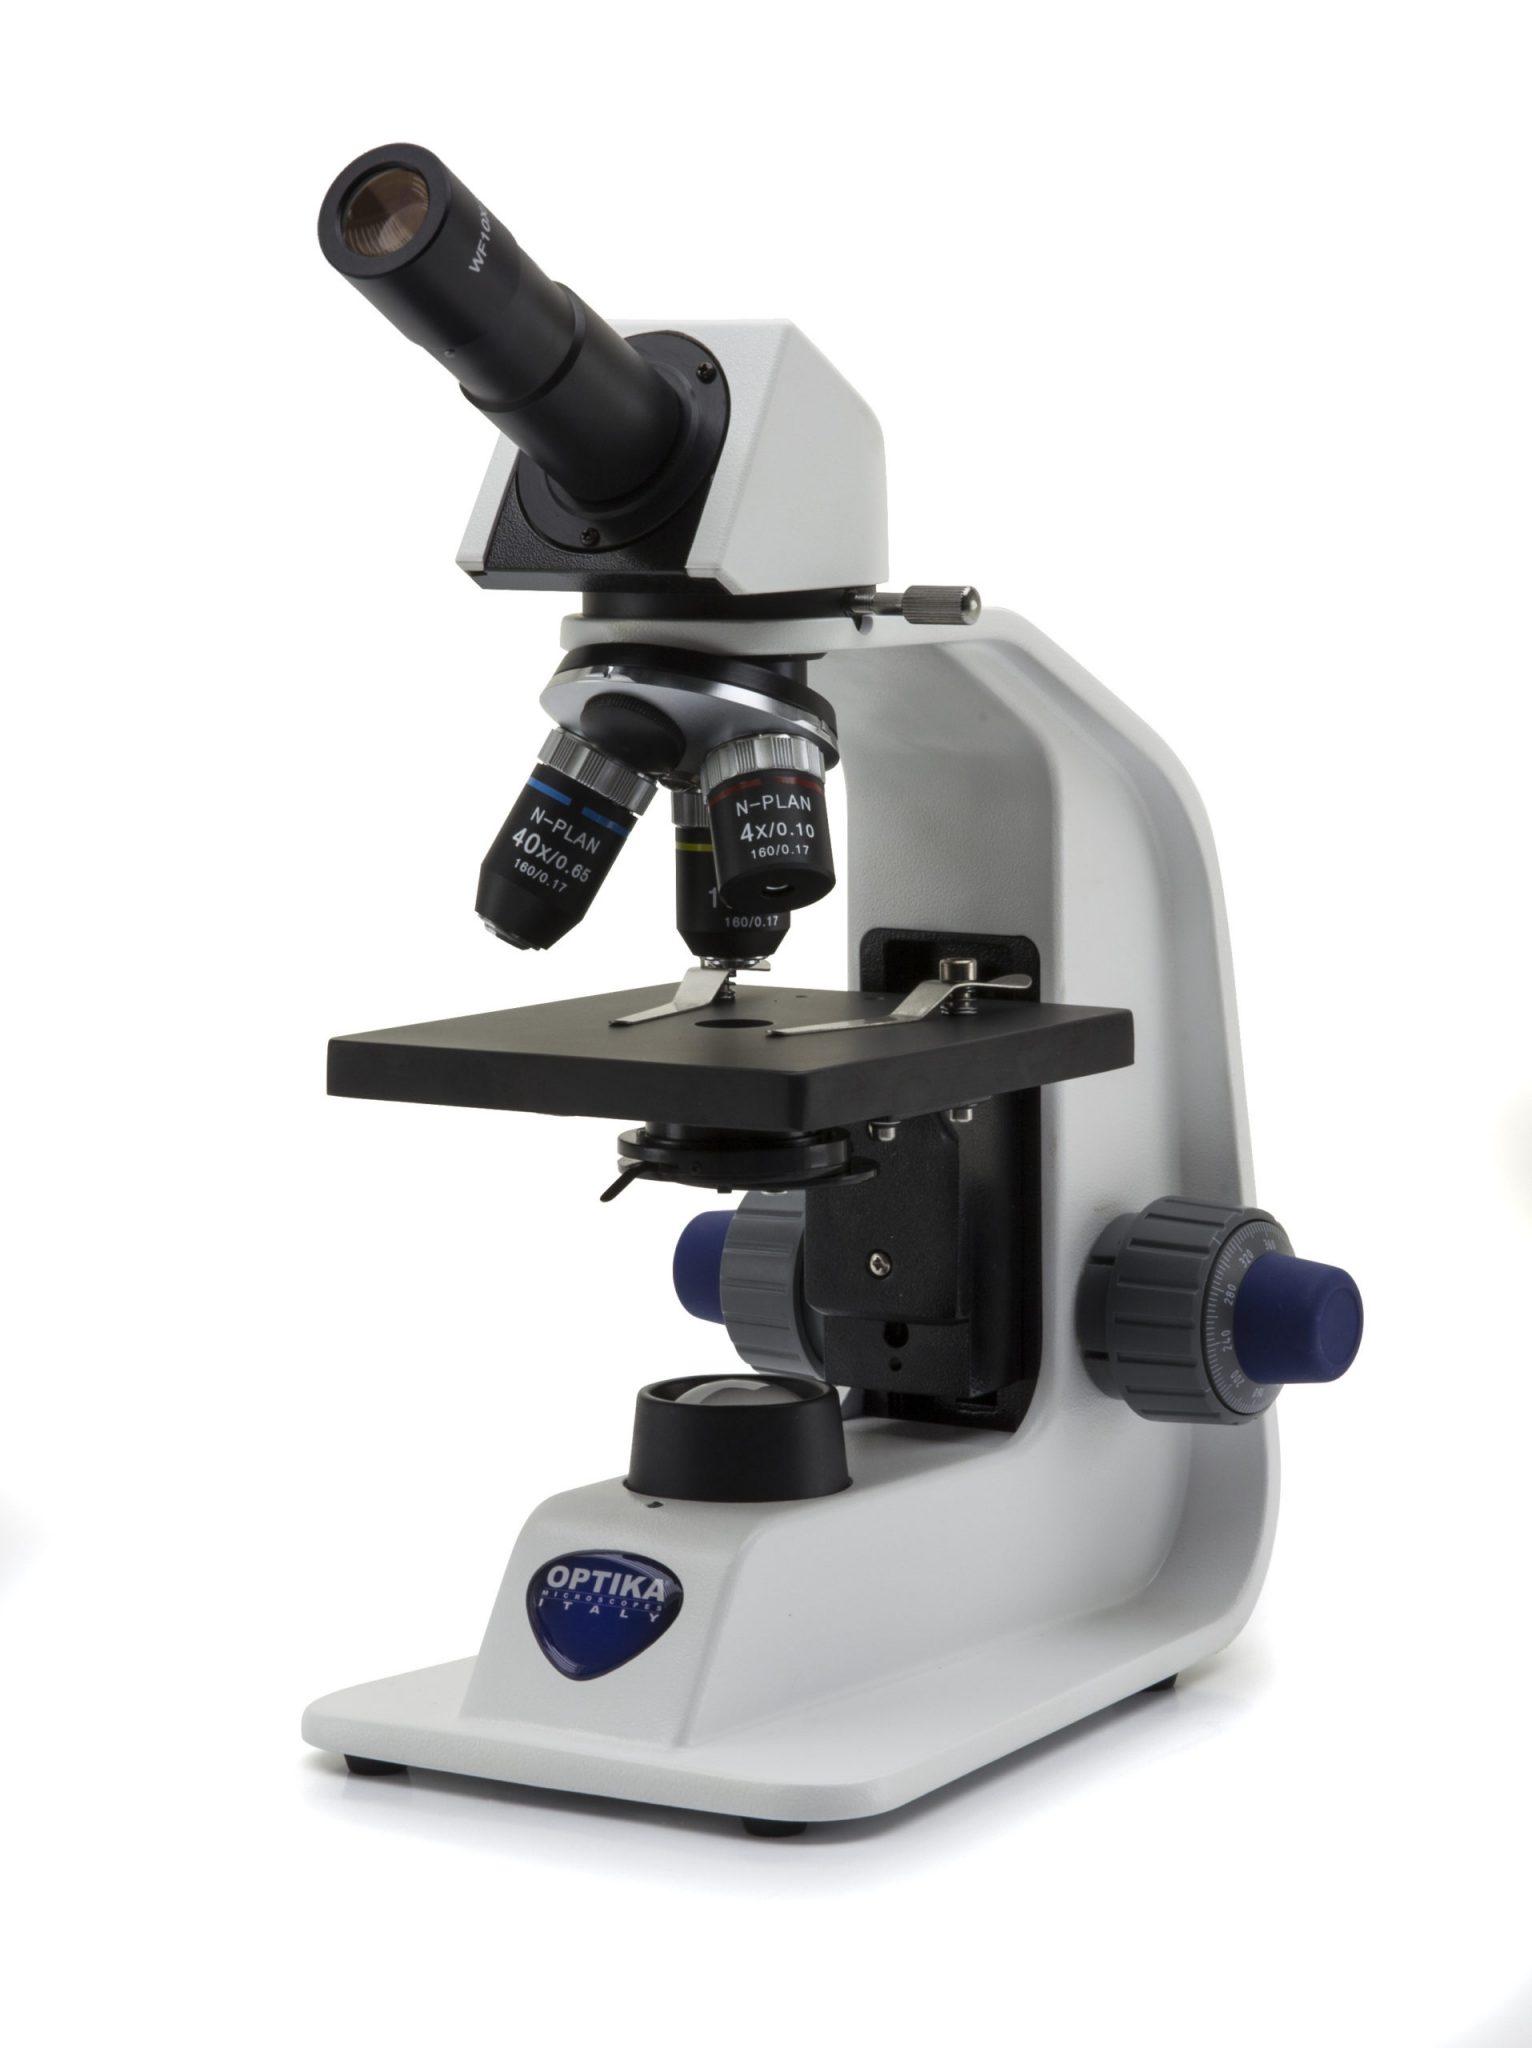 B-151R-PL Microscopio monocular, 400x, batería recargable de iones de litio, objetivos N-PLAN, enchufe múltiple